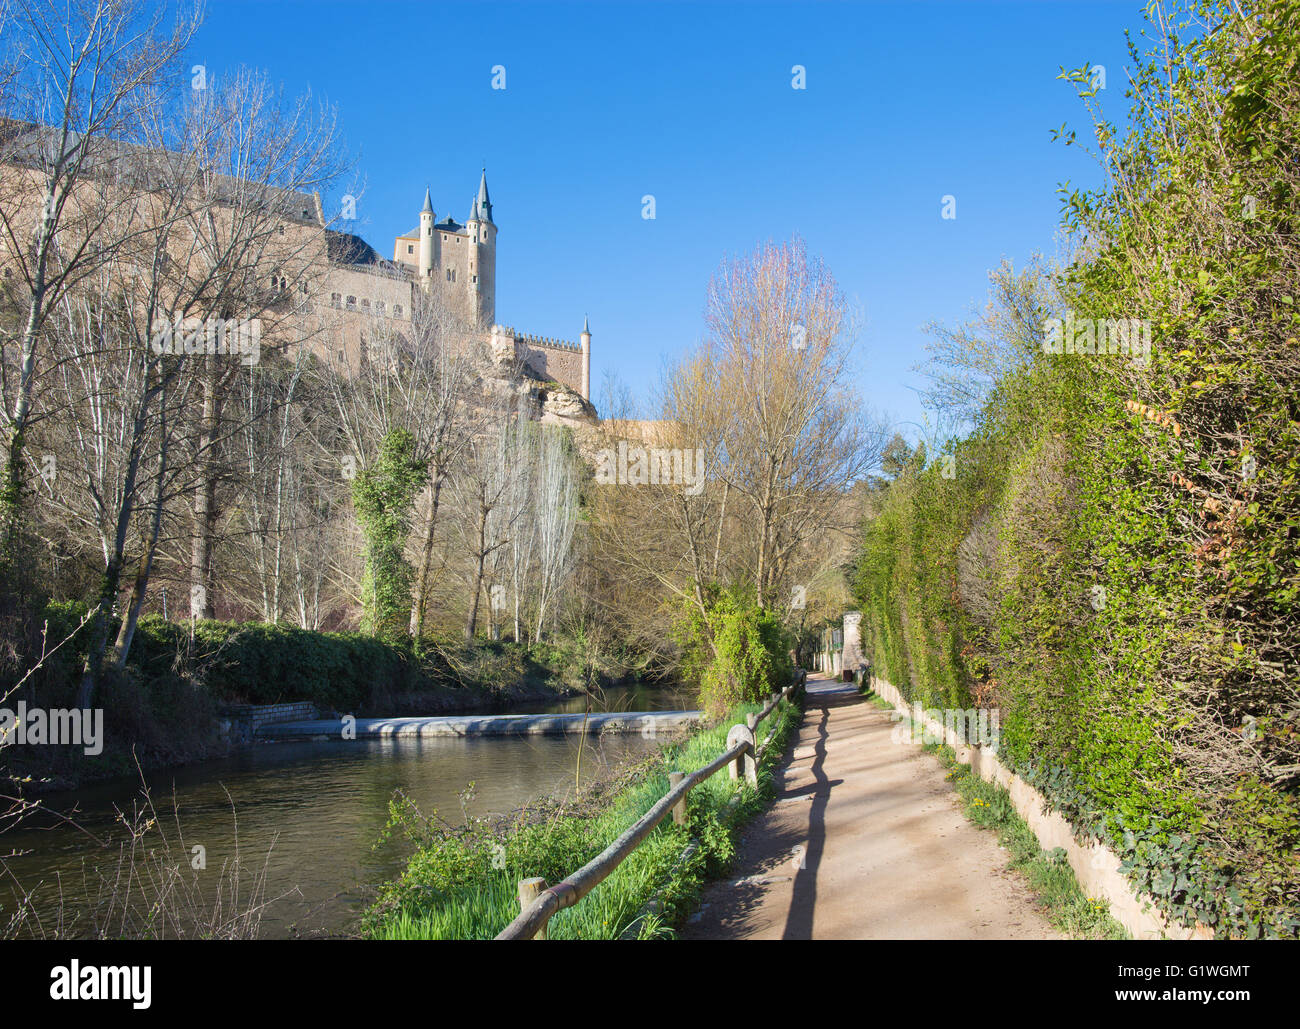 Segovia - Alcazar castle over the Rio Eresma Stock Photo